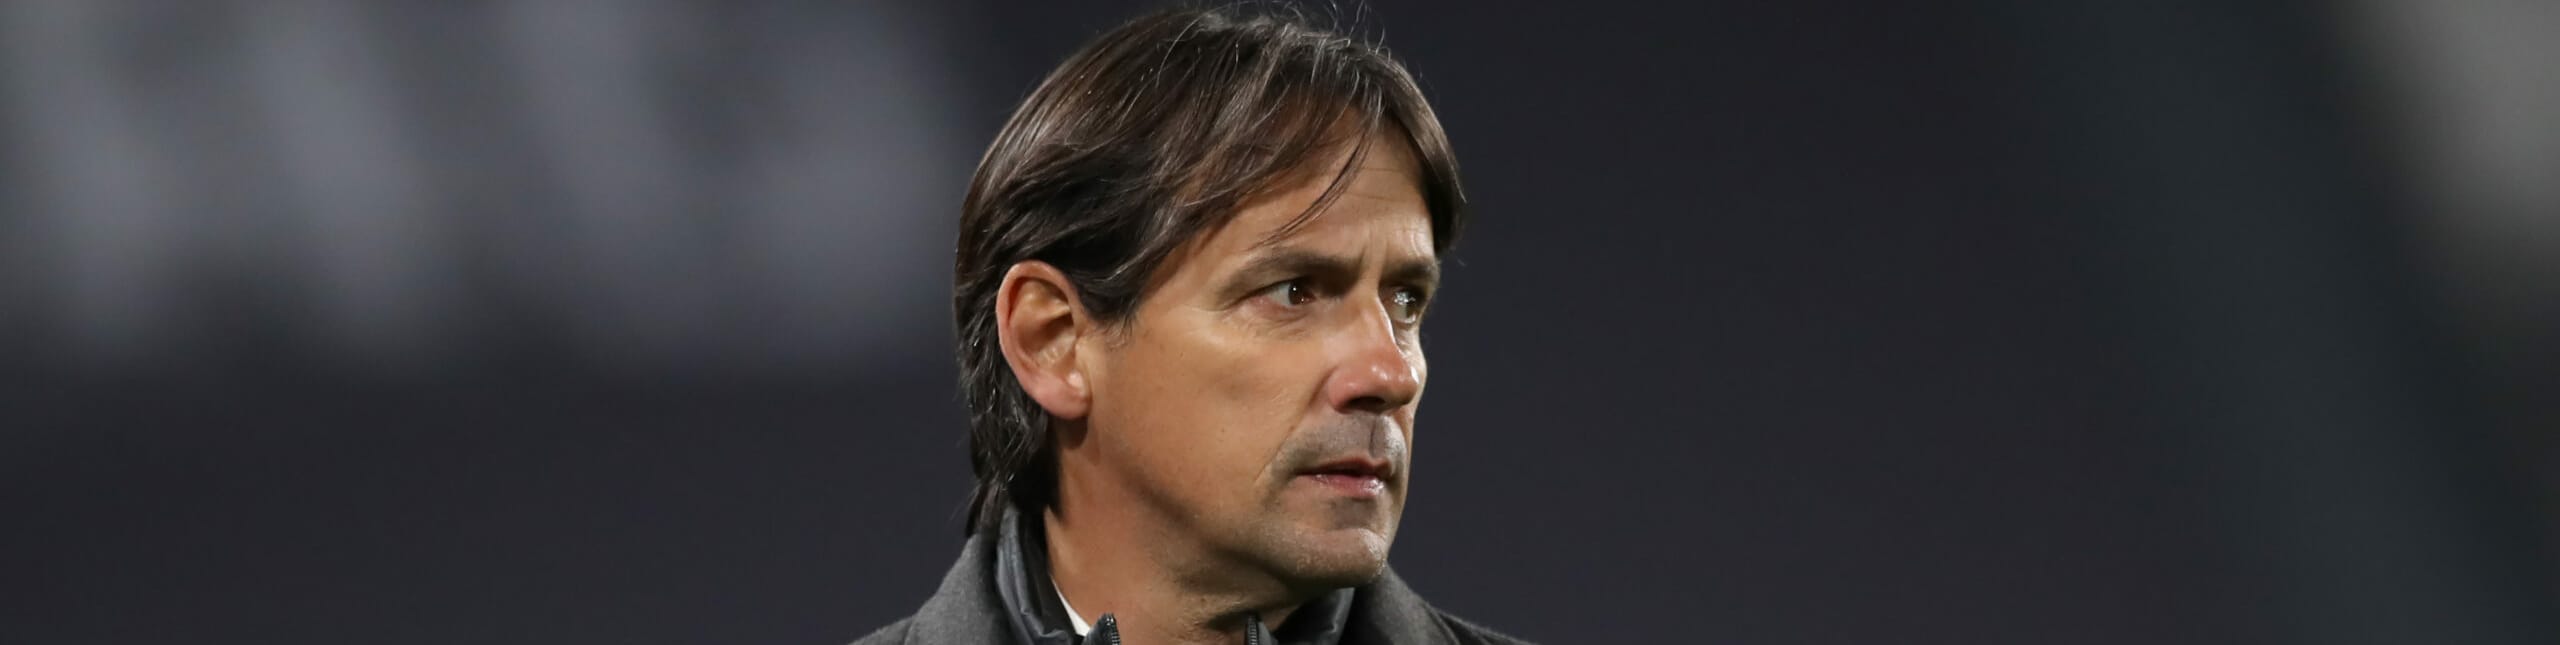 Lazio-Crotone, Inzaghi pensa a turnover e Champions ma non vuole sorprese